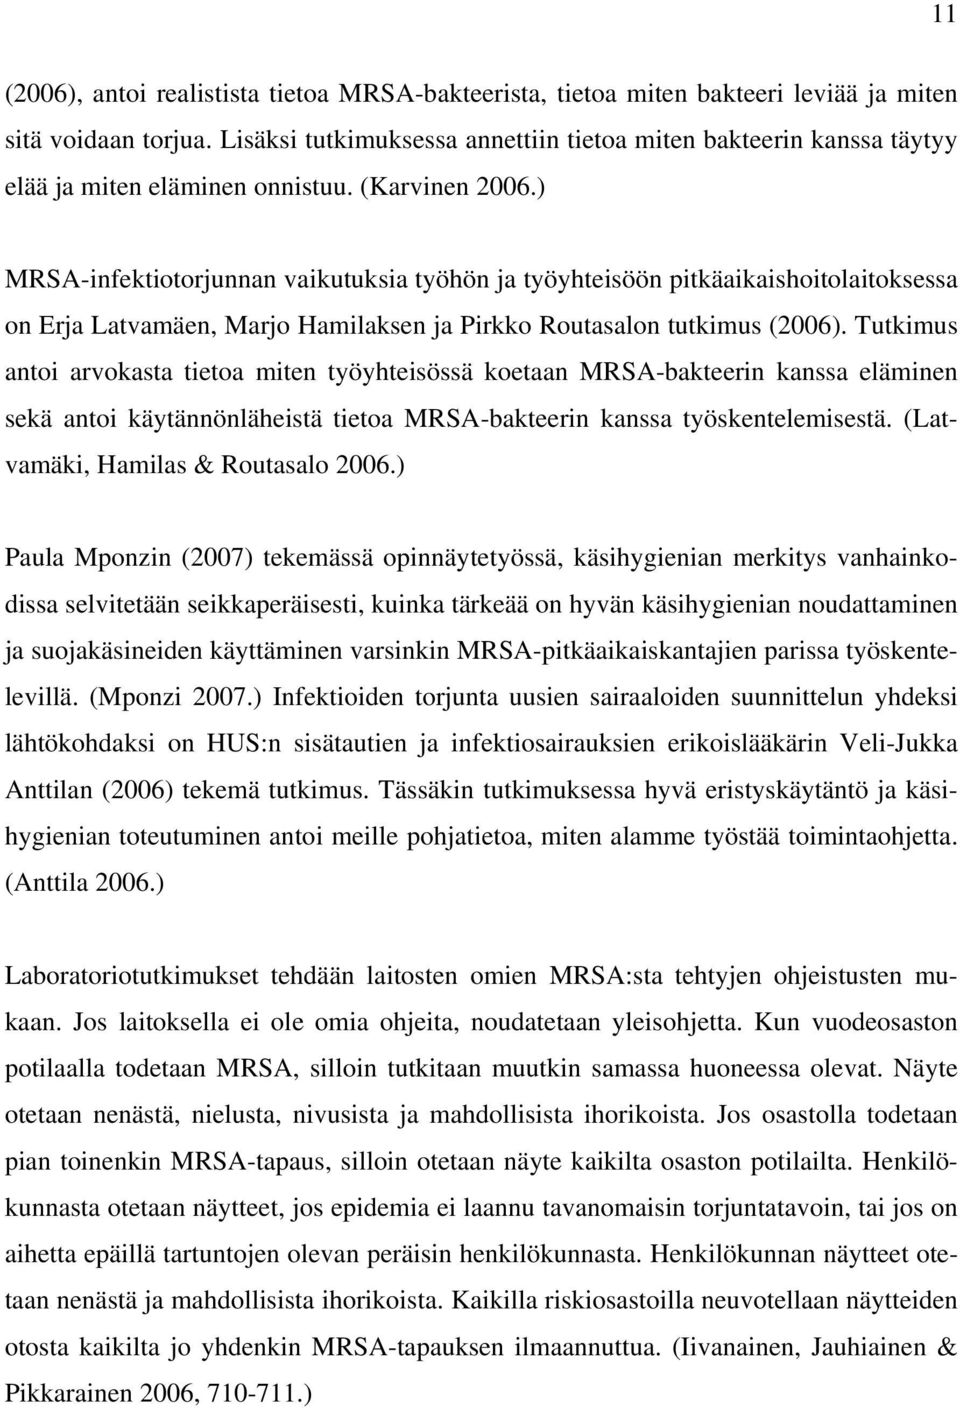 ) MRSA-infektiotorjunnan vaikutuksia työhön ja työyhteisöön pitkäaikaishoitolaitoksessa on Erja Latvamäen, Marjo Hamilaksen ja Pirkko Routasalon tutkimus (2006).